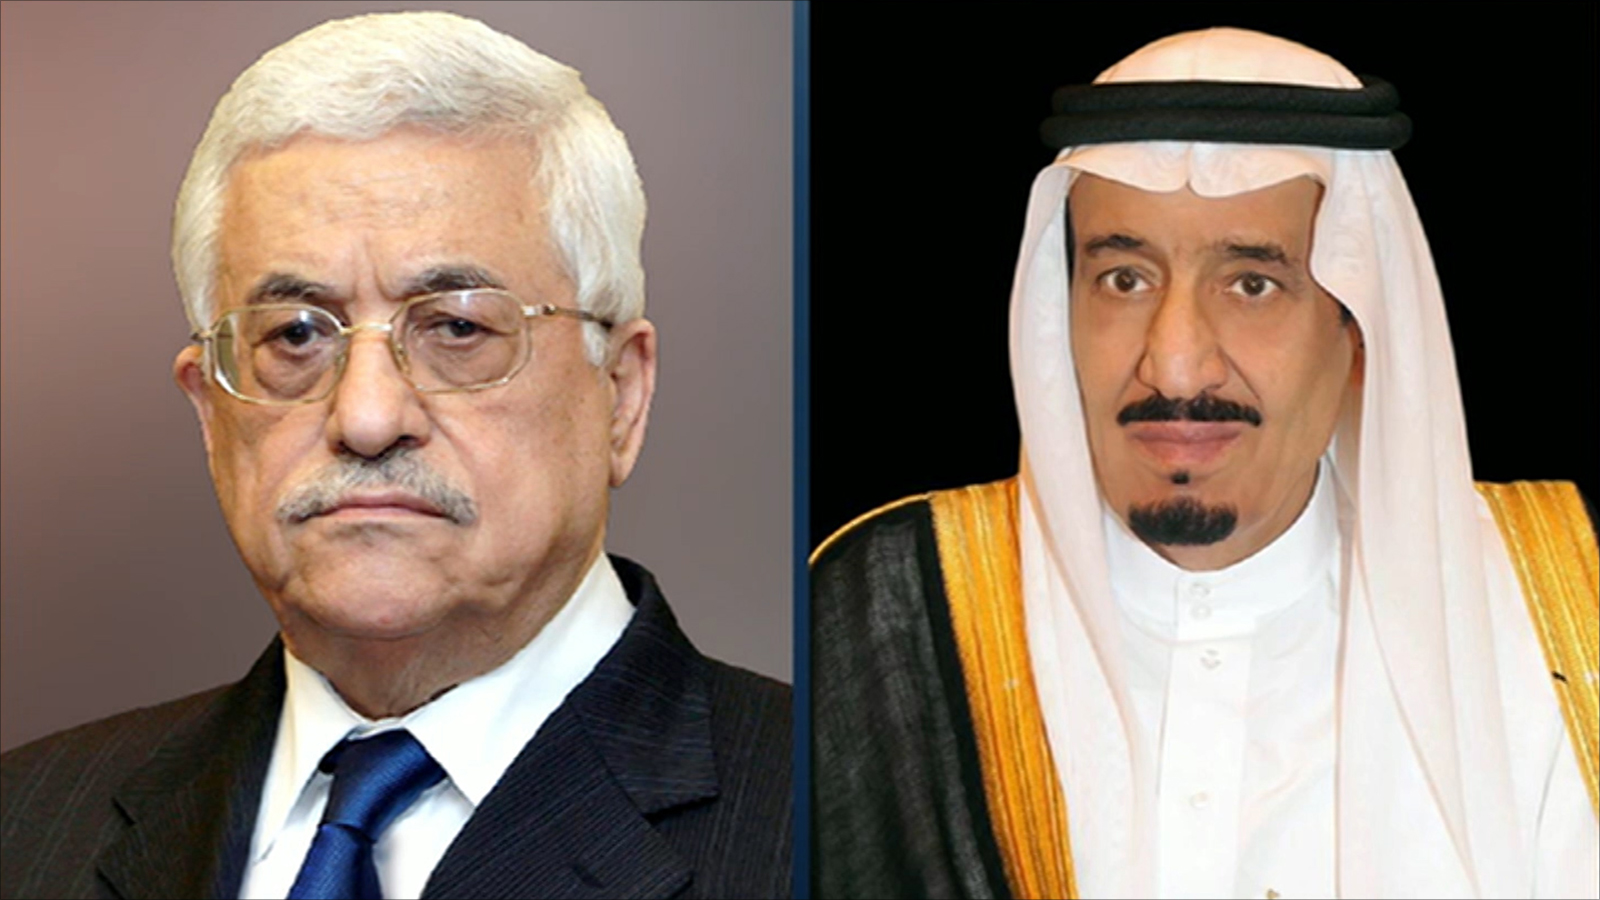 استمرار السيد أبو مازن في ممارسة سياسة التباطؤ والتردد المقصود والمدعومة حاليا من المملكة العربية السعودية، ستواجه في لحظة من اللحظات بالمعارضة الإسرائيلية الغالبة والحاسمة في قرار الإقليم